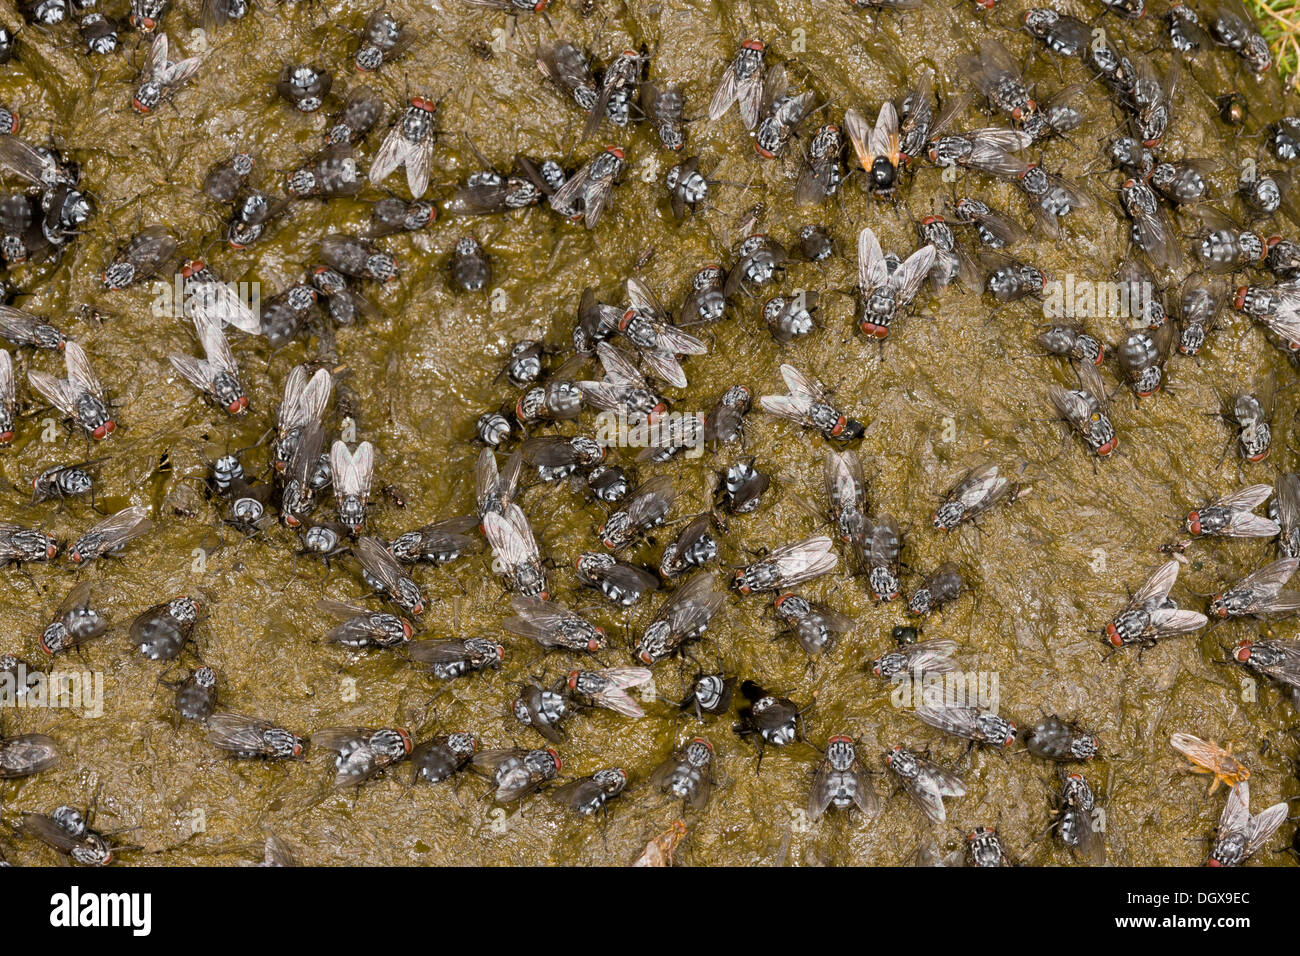 La bouse de vache fortement couverte de mouches, principalement une chair-fly Sarcophaga sp, Midi les mouches et Dung-mouches. Auvergne, France. Banque D'Images